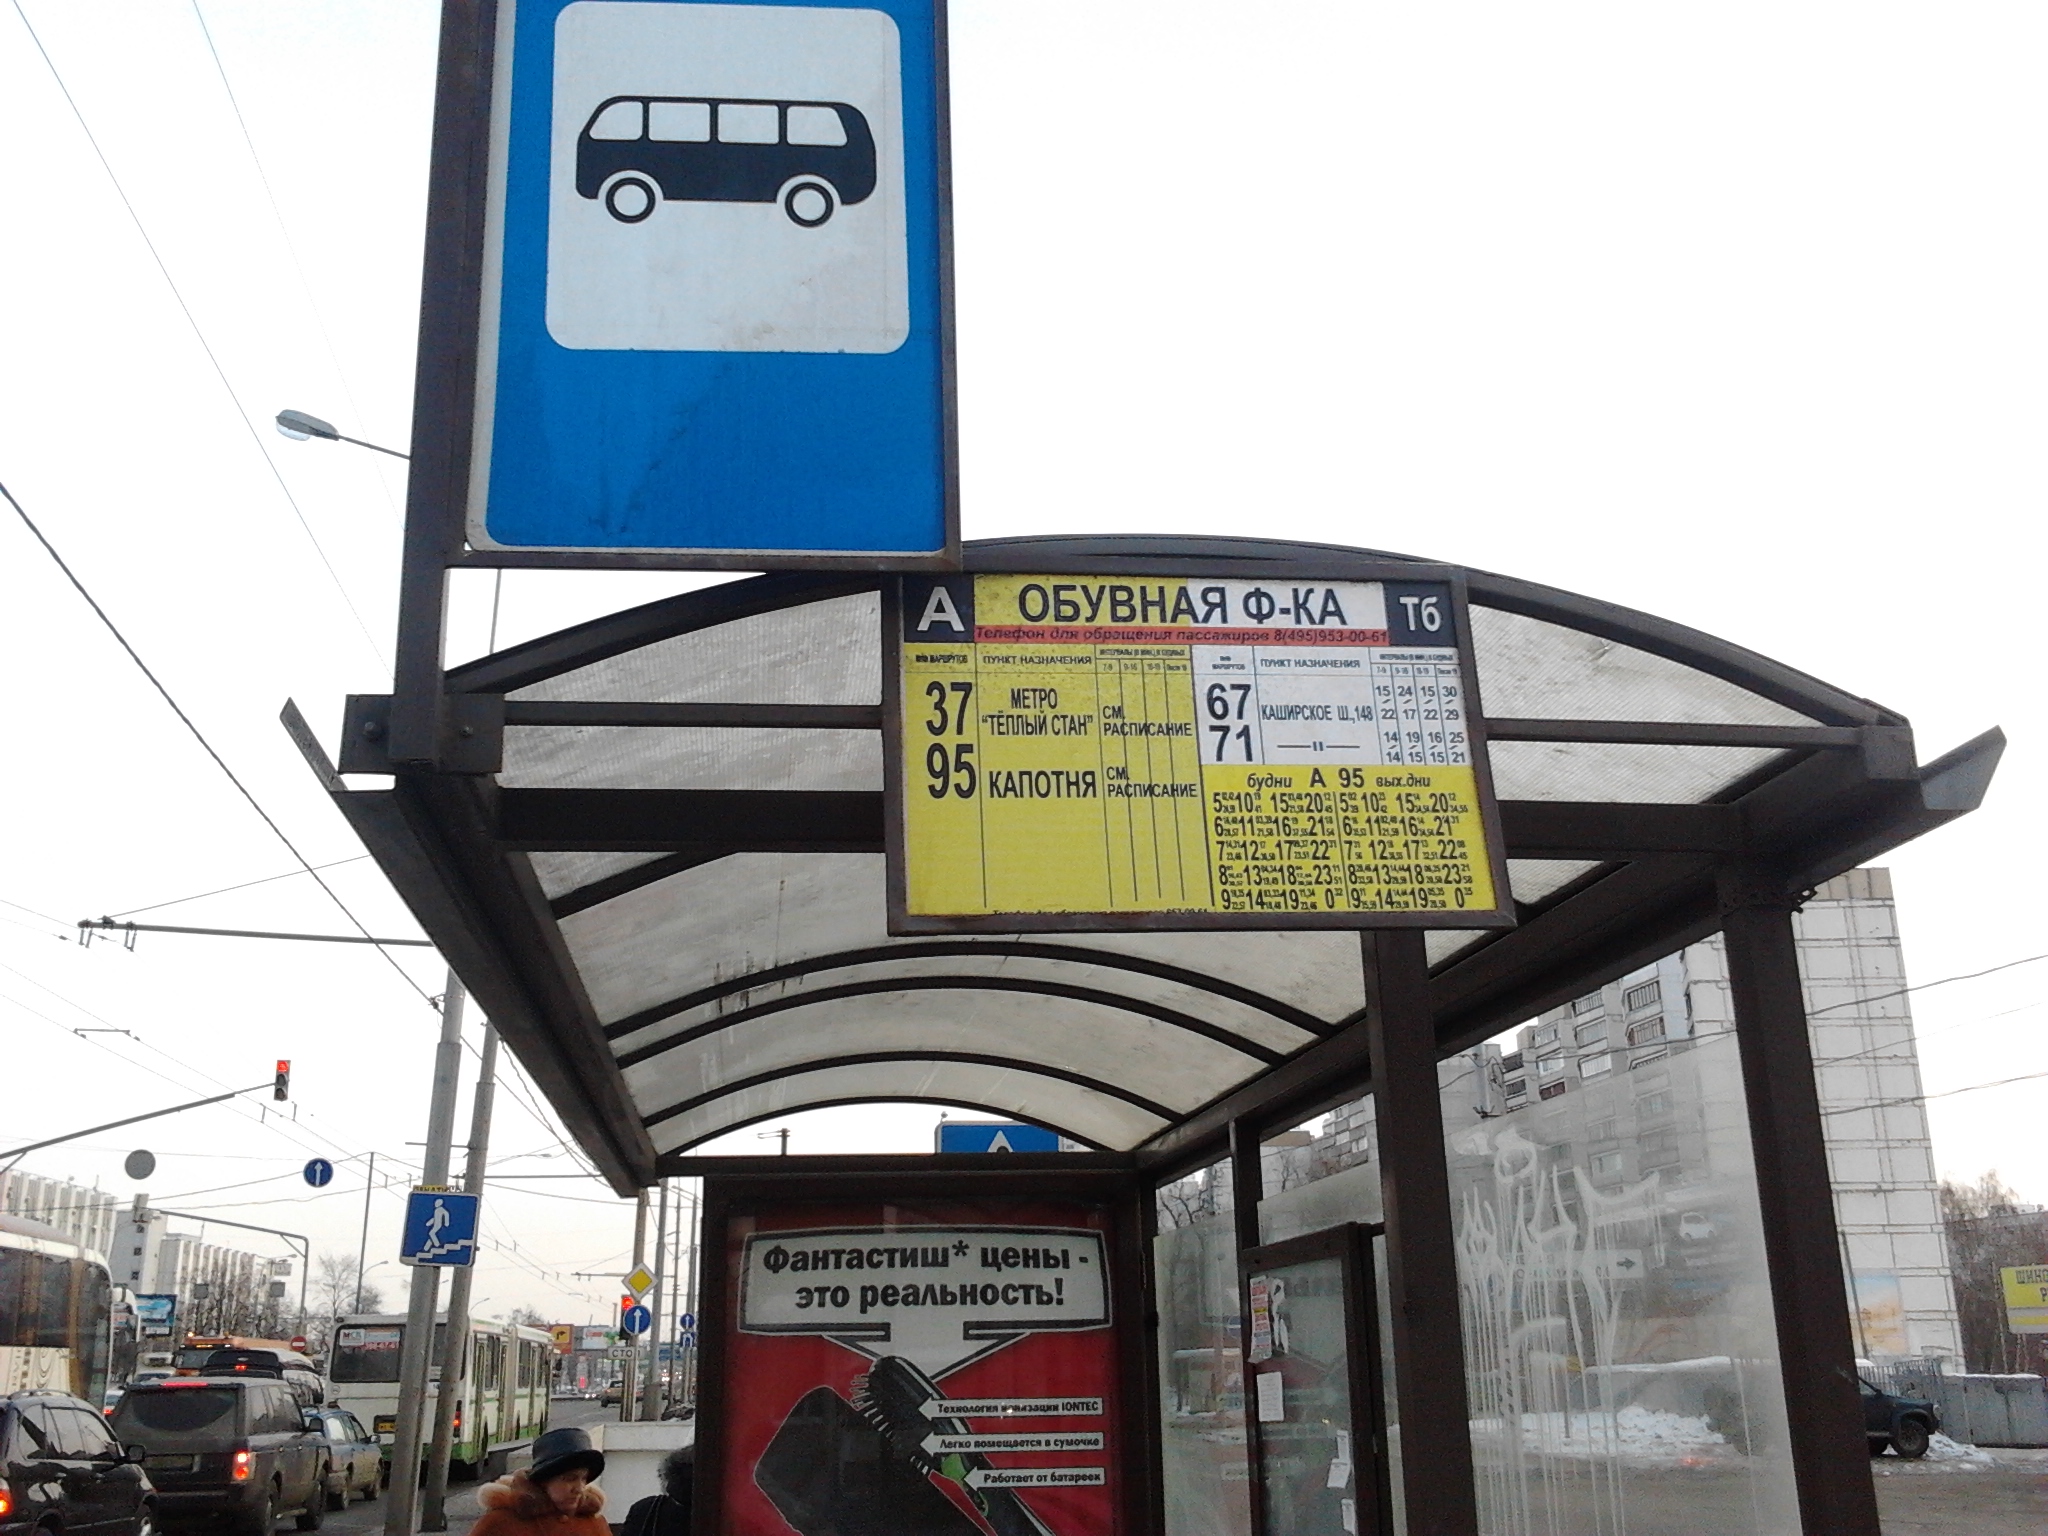 Ост общественного транспорта. Название остановок общественного транспорта. Остановка общественного транспорта Москва. Остановки в Москве. Название автобусной остановки.